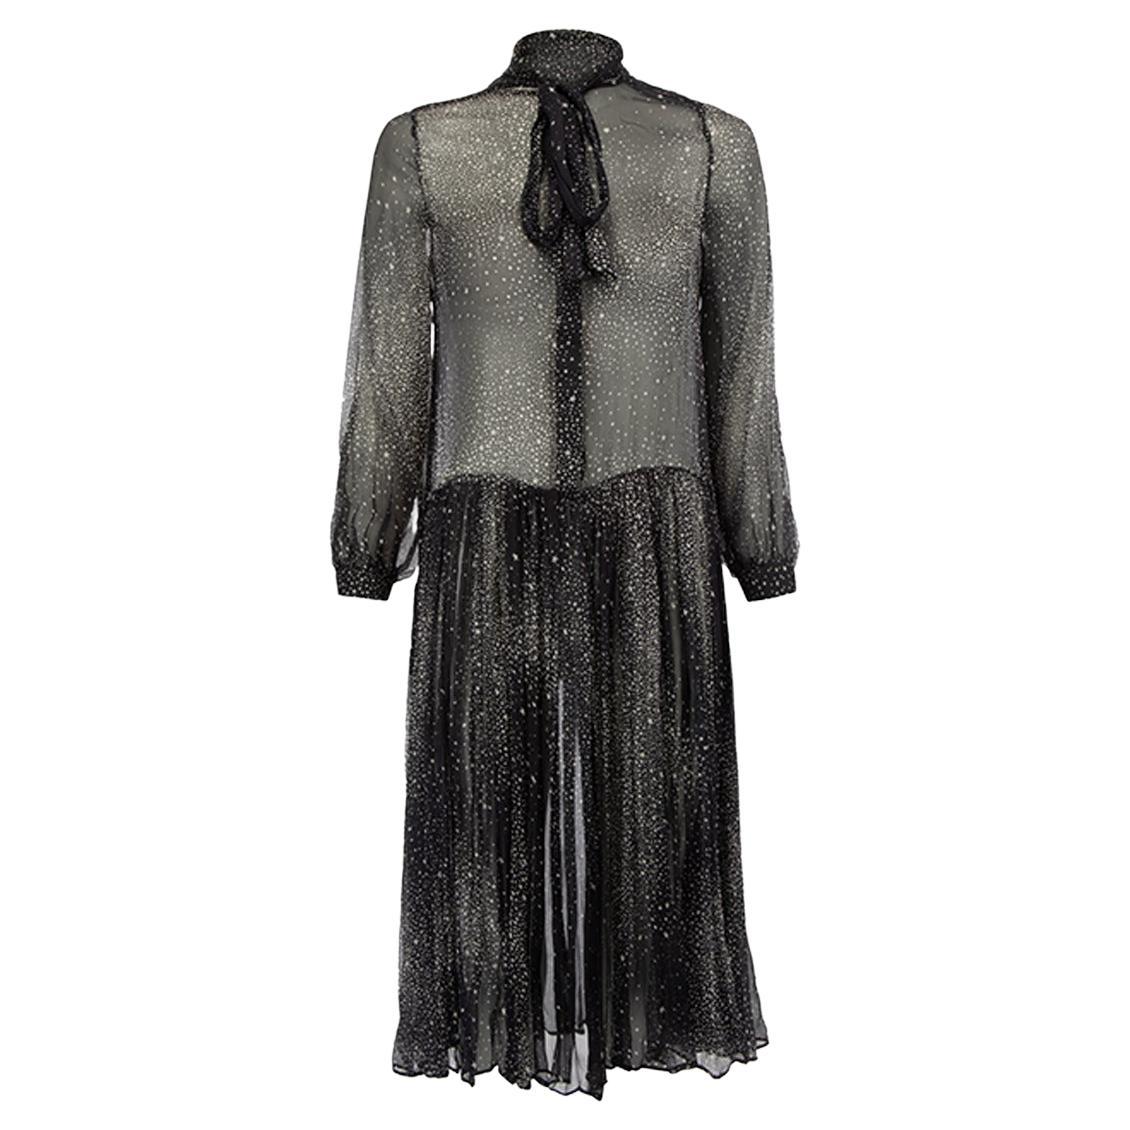 Pre-Loved Zimmermann Women's Black Silk Printed Sheer Tie Neck Dress